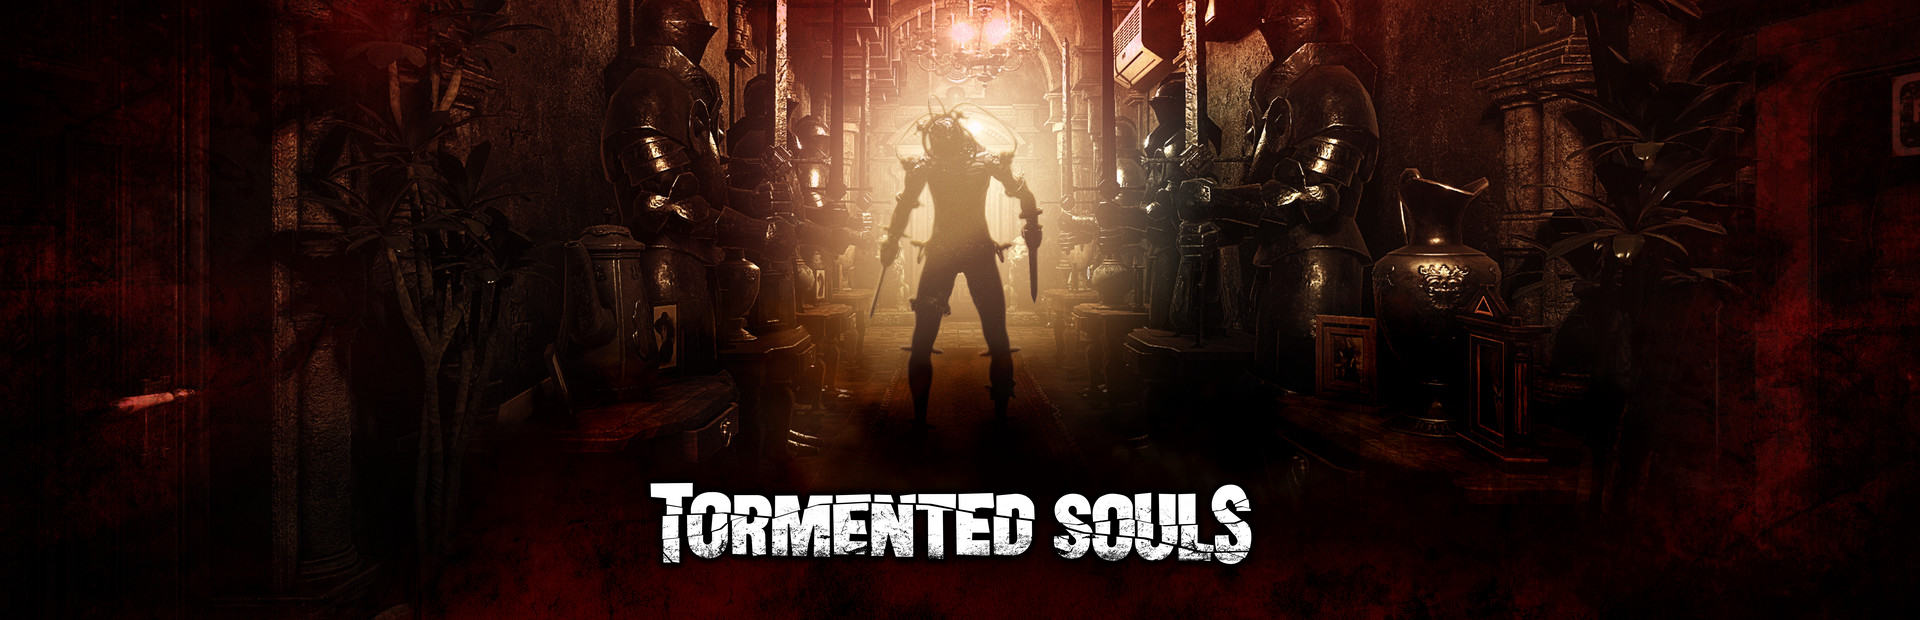 دانلود بازی Tormented Souls برای کامپیوتر | گیمباتو